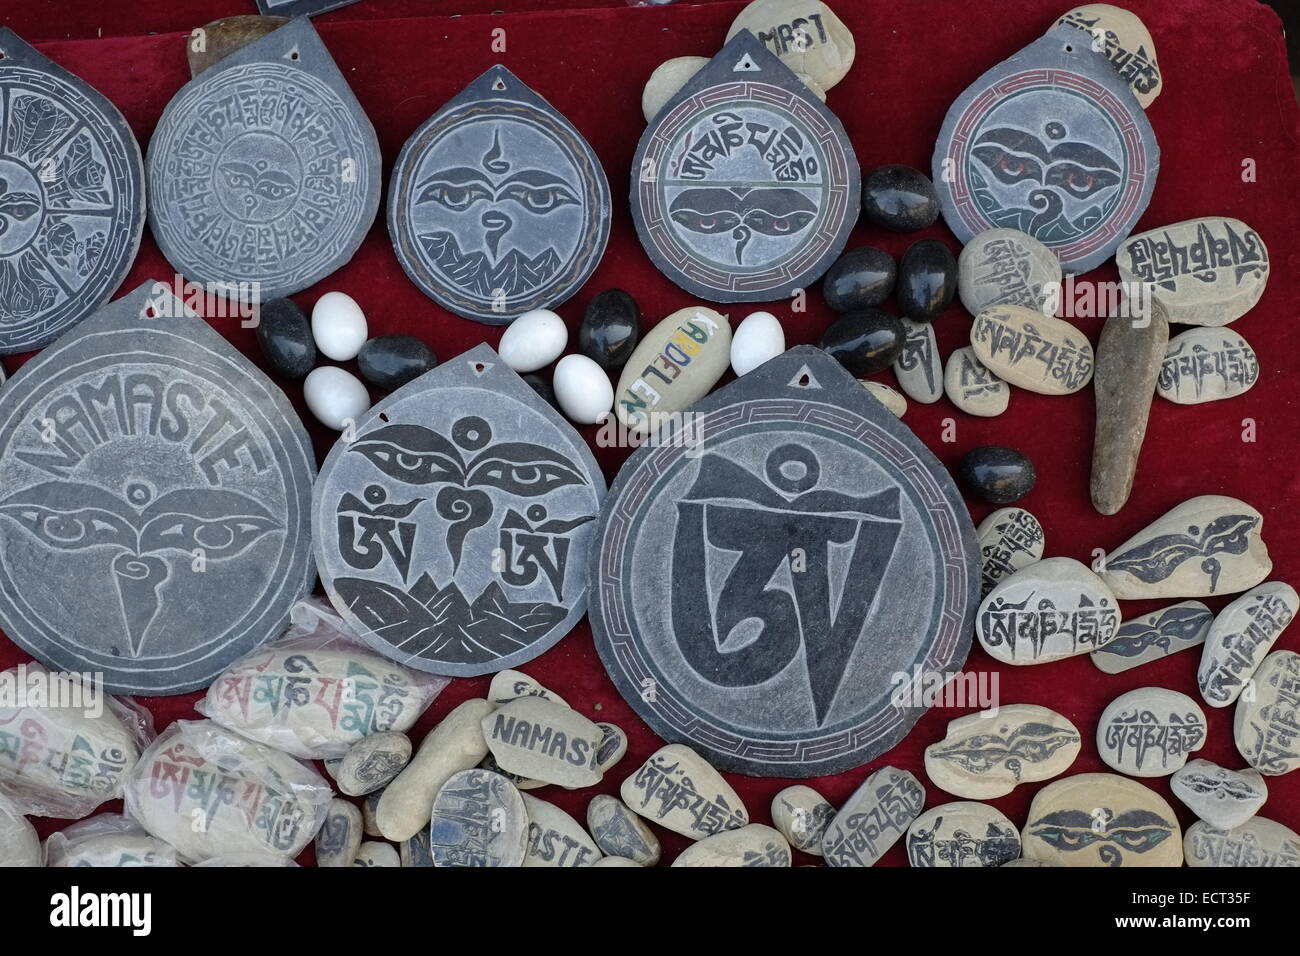 Souvenirs à vendre à l'entrée de temple de Changu Narayan le plus ancien site de pèlerinage de la vallée de Katmandou au Népal Banque D'Images